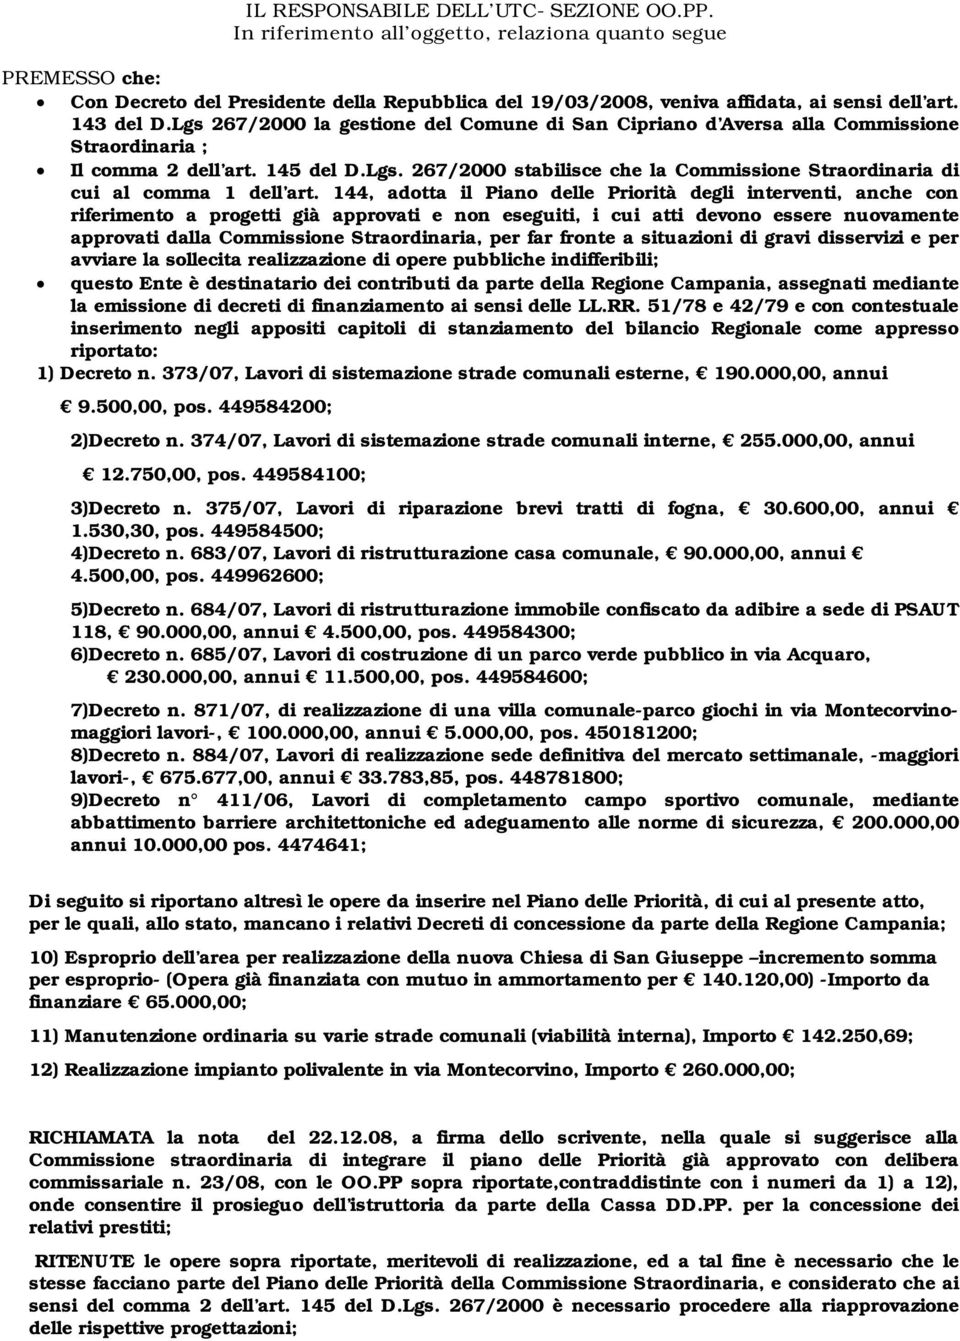 Lgs 267/2000 la gestione del Comune di San Cipriano d Aversa alla Commissione Straordinaria ; Il comma 2 dell art. 145 del D.Lgs. 267/2000 stabilisce che la Commissione Straordinaria di cui al comma 1 dell art.